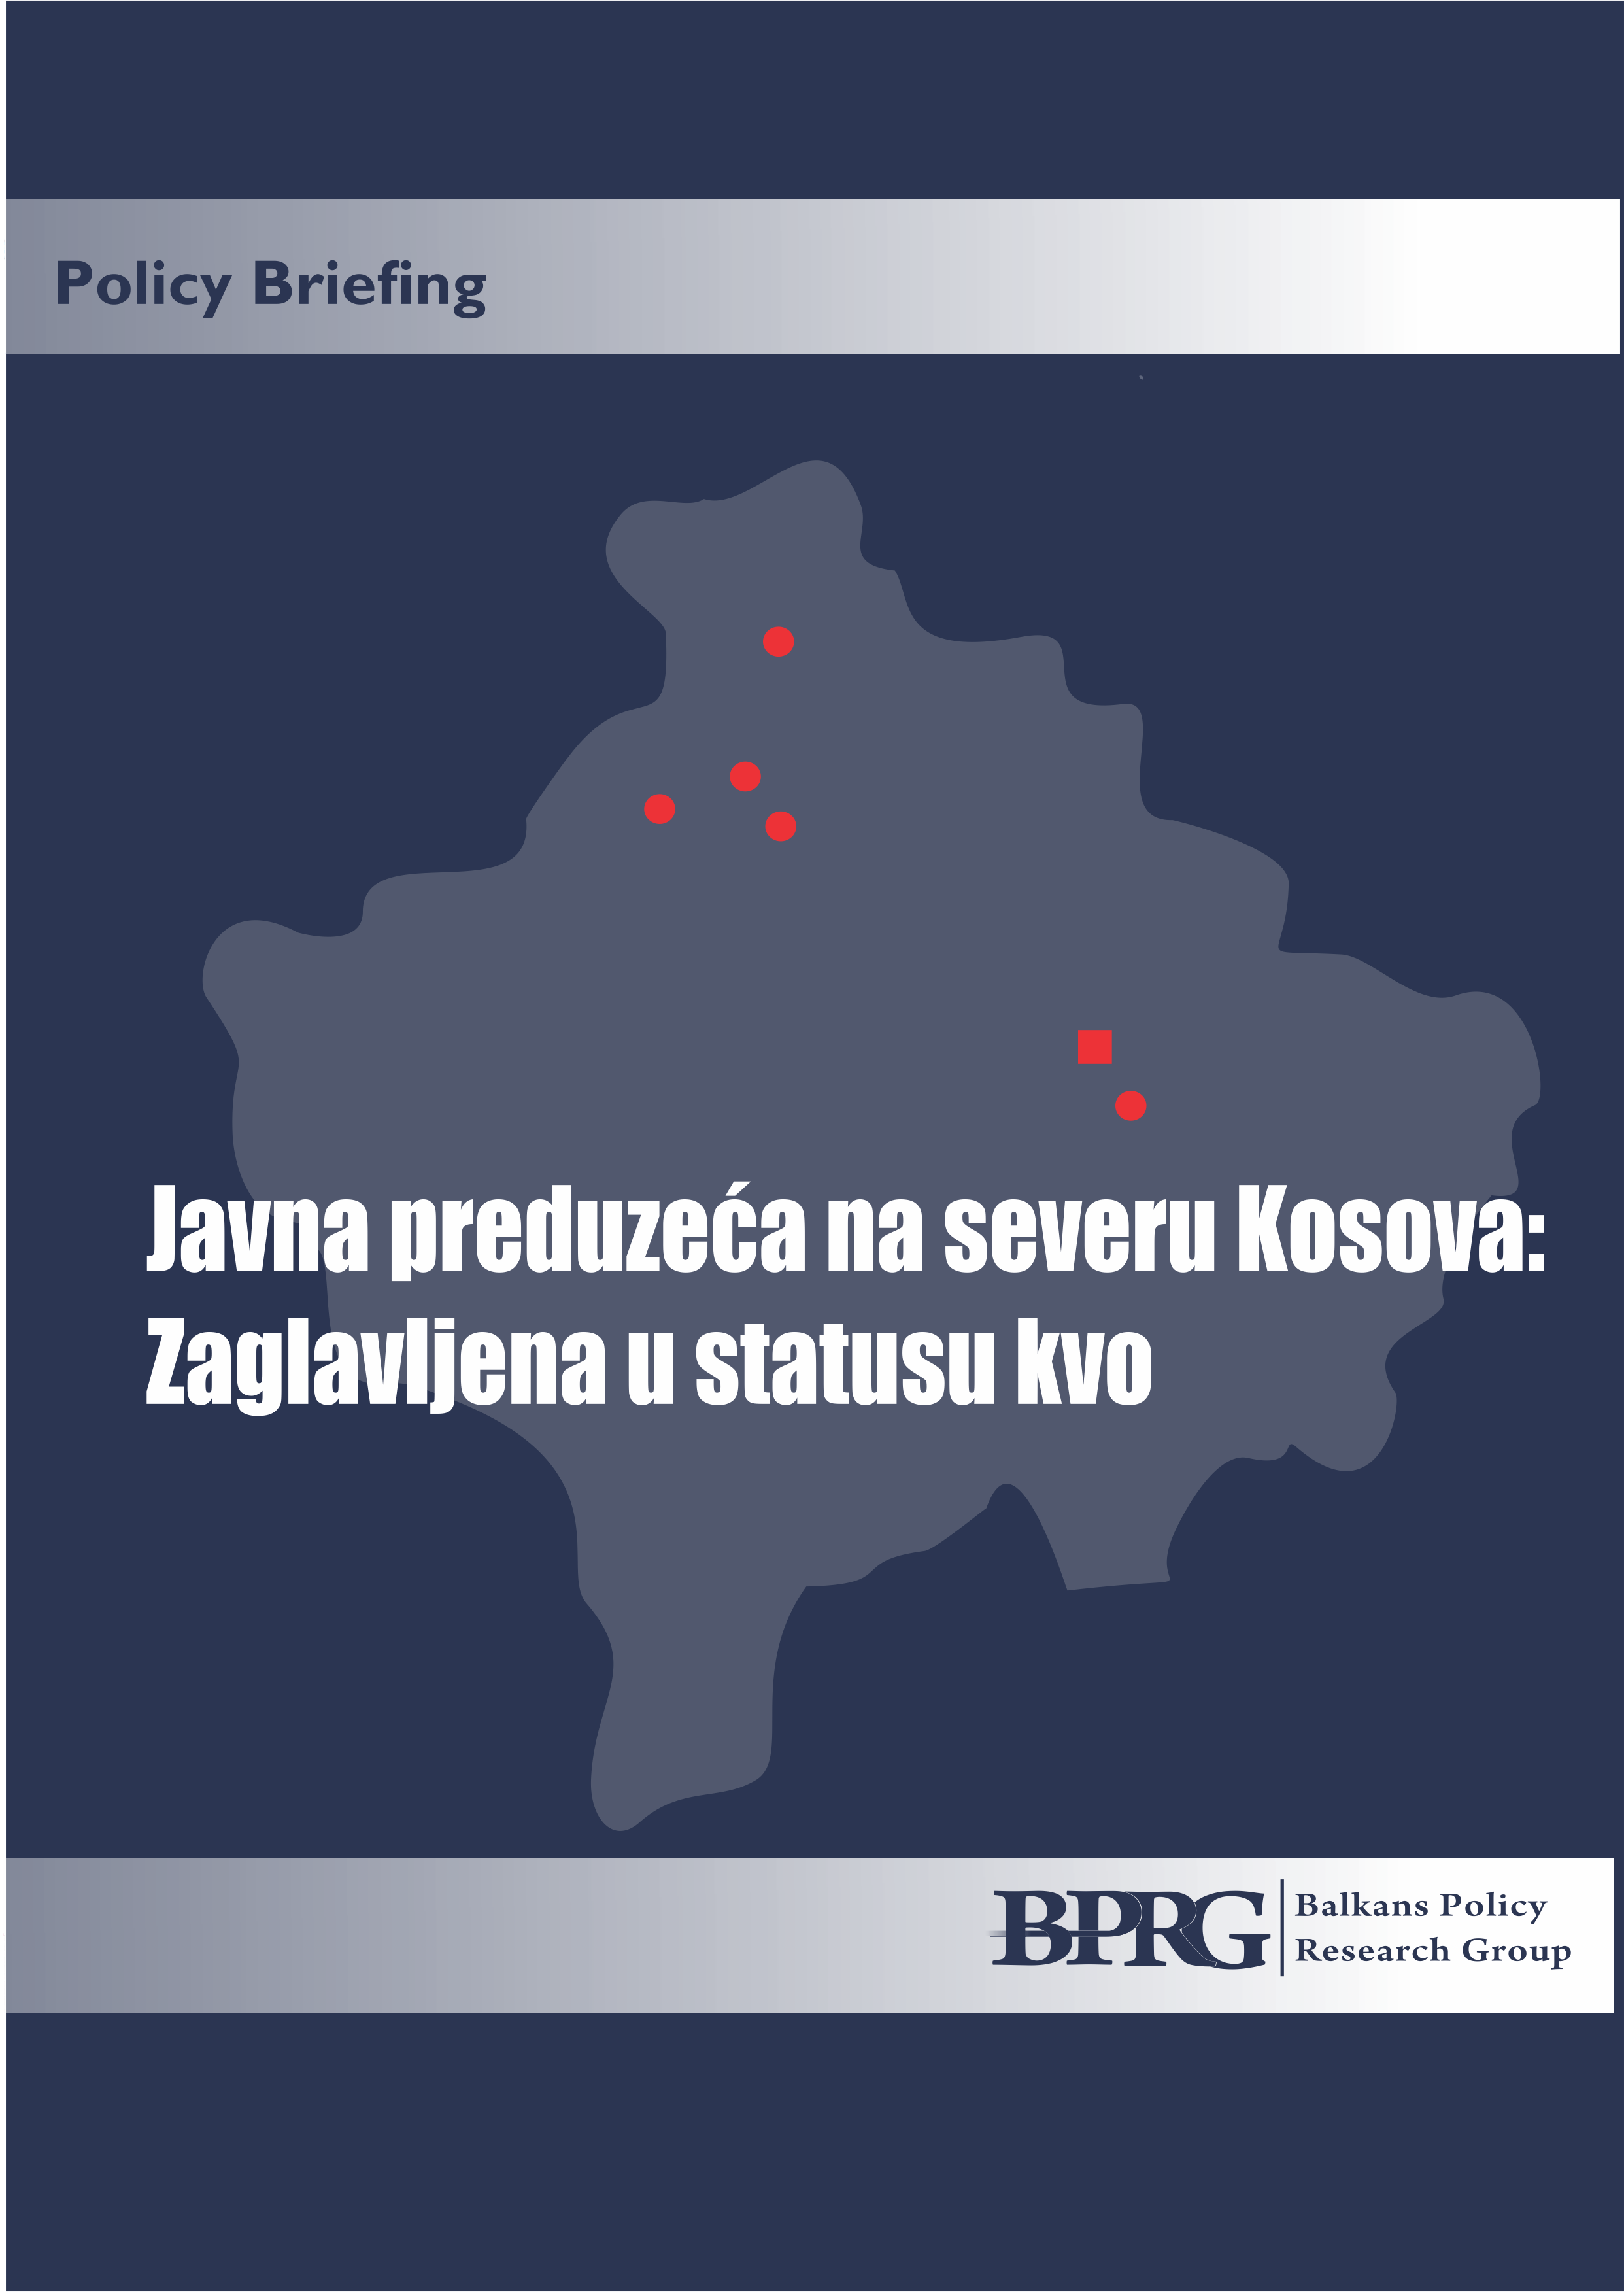 Javna preduzeća na severu Kosova: Zaglavljena u statusu kvo